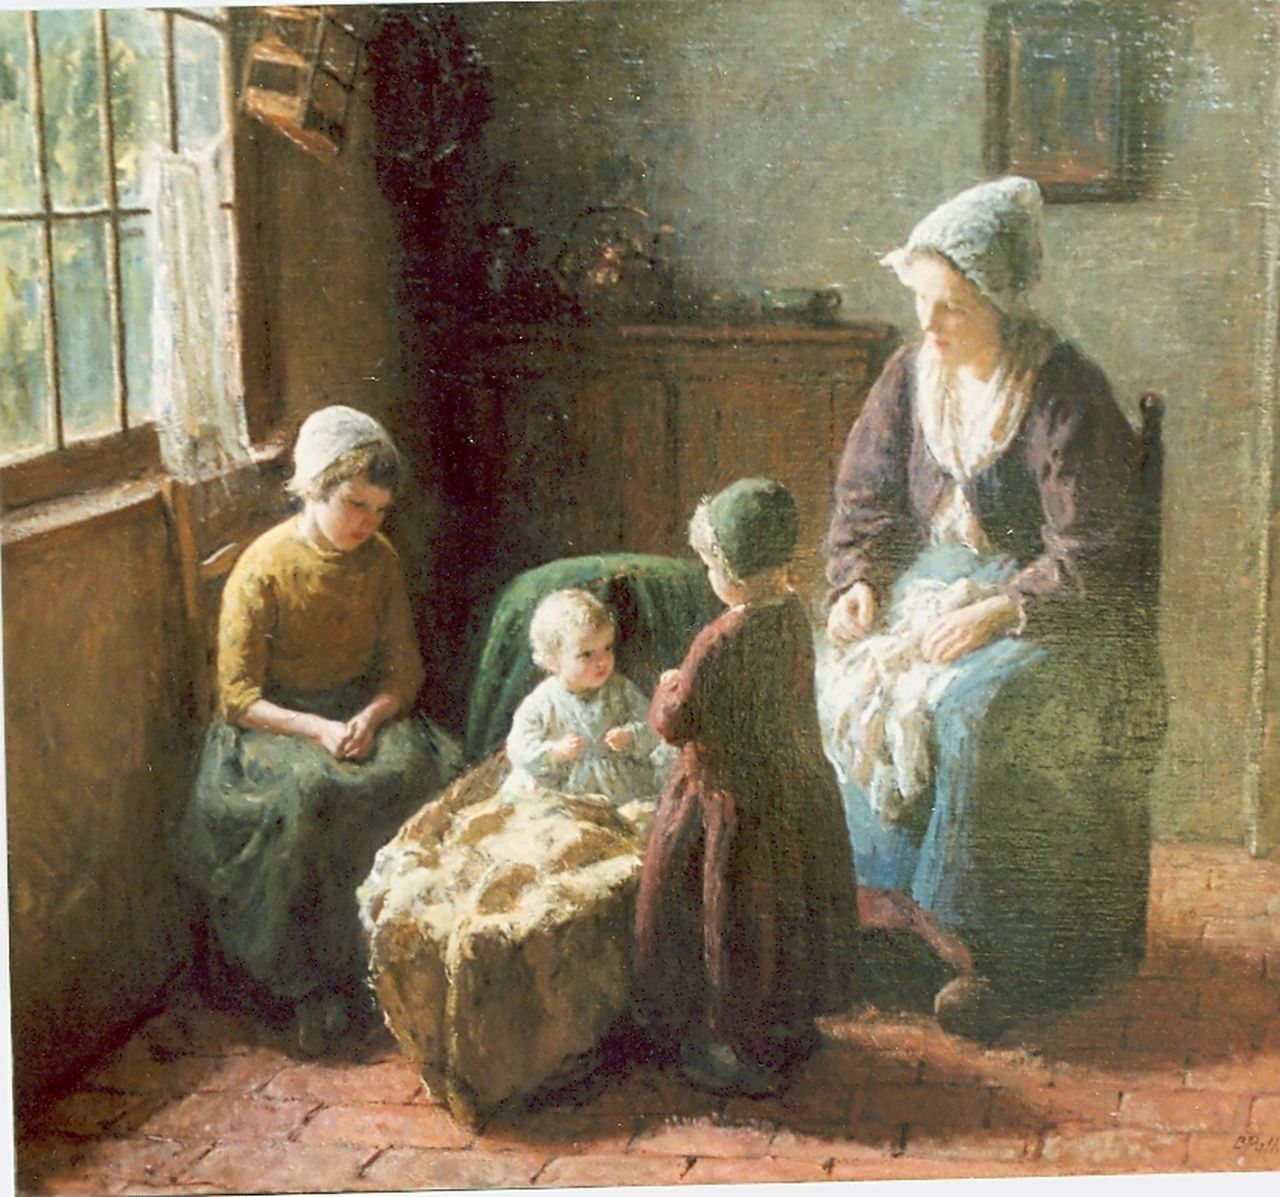 Pothast B.J.C.  | 'Bernard' Jean Corneille Pothast, Interieur met moeder en drie zusjes, olieverf op doek 71,0 x 81,5 cm, gesigneerd rechtsonder